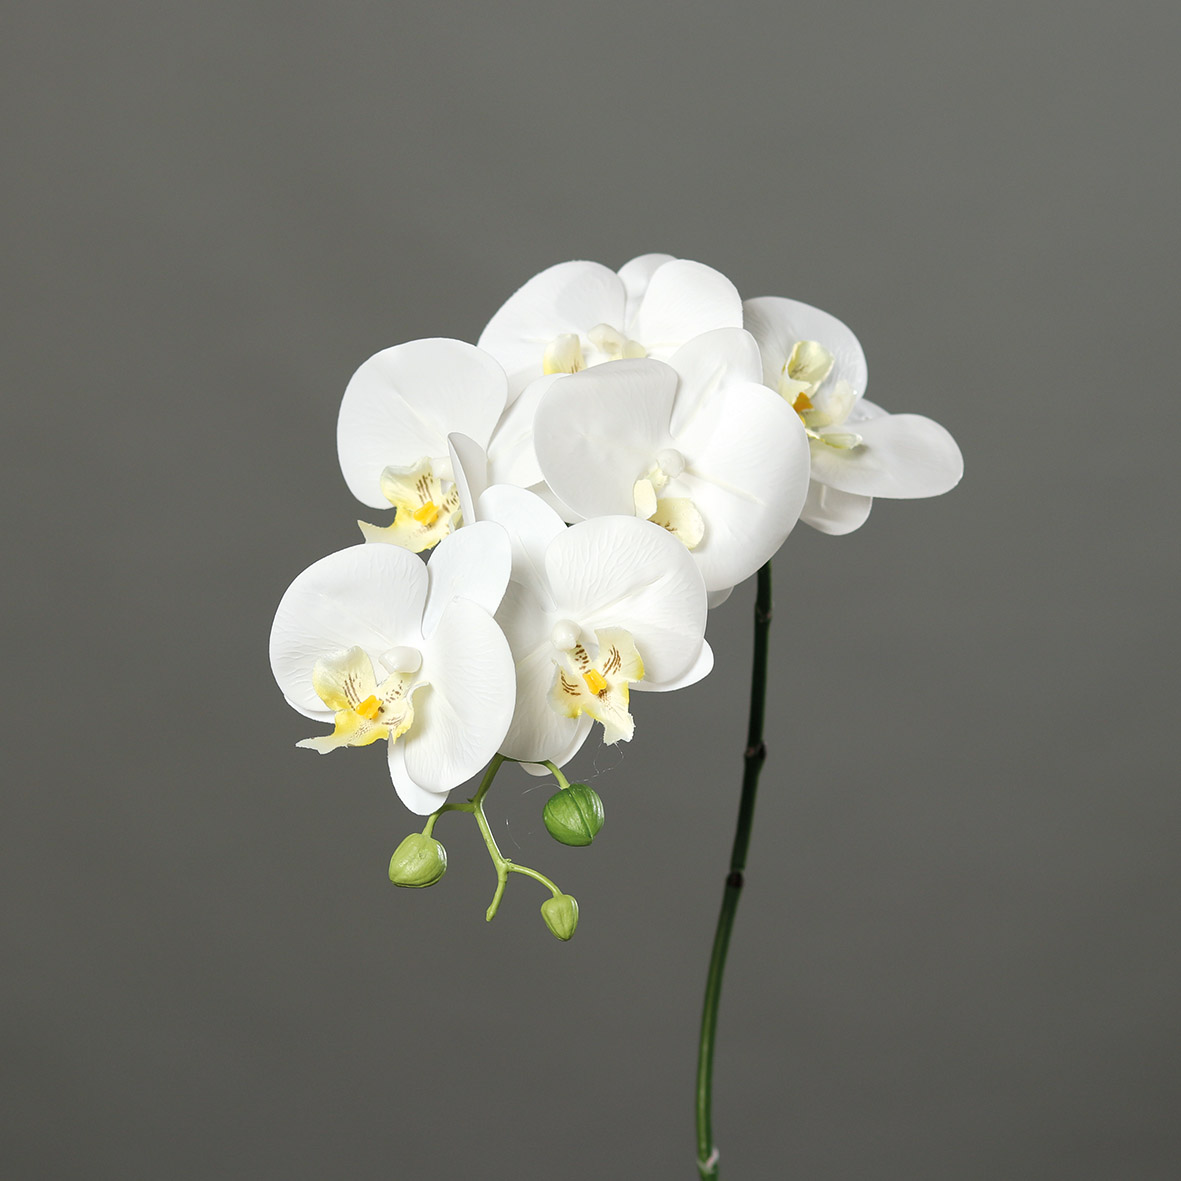 Orchideenzweig Real Touch 80cm weiß DP Kunstblumen künstliche Orchidee Orchideen Blumen